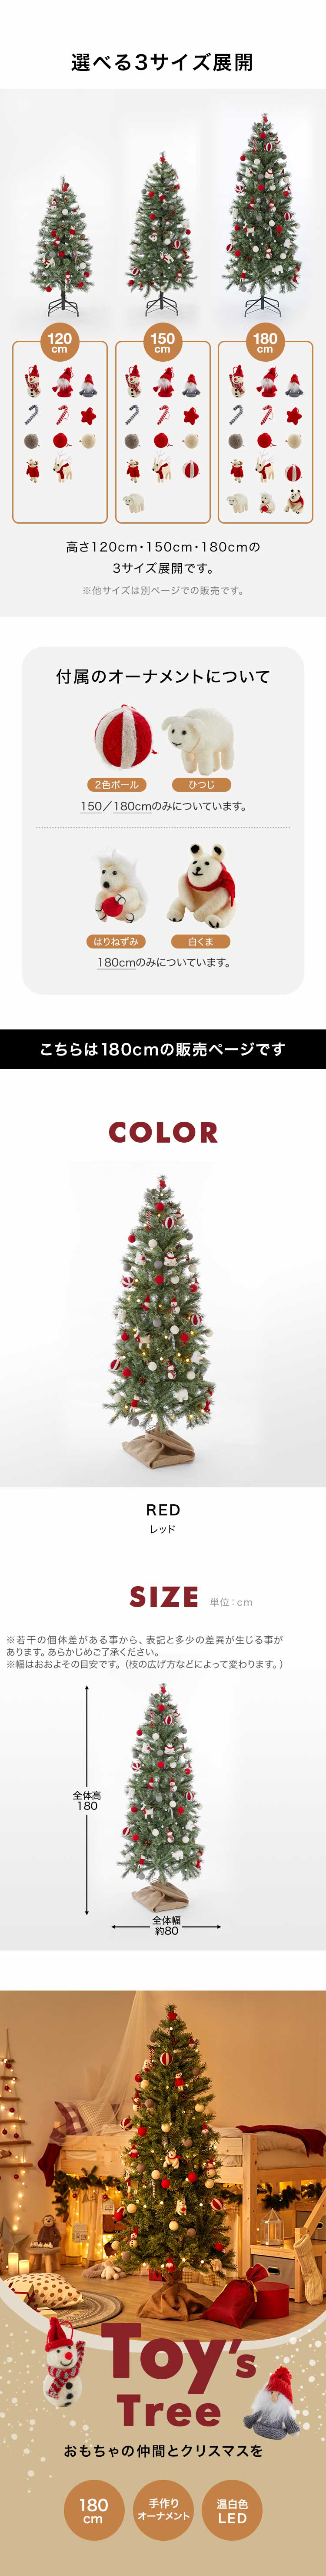 クリスマスツリー 180cm セット おしゃれ ツリー オーナメント 収納箱 かわいい 可愛い ライト 飾り コンパクト ハンドメイド 電飾付き led  ロウヤ LOWYA fg02-g1018-2l0 LOWYA(ロウヤ)店 通販 